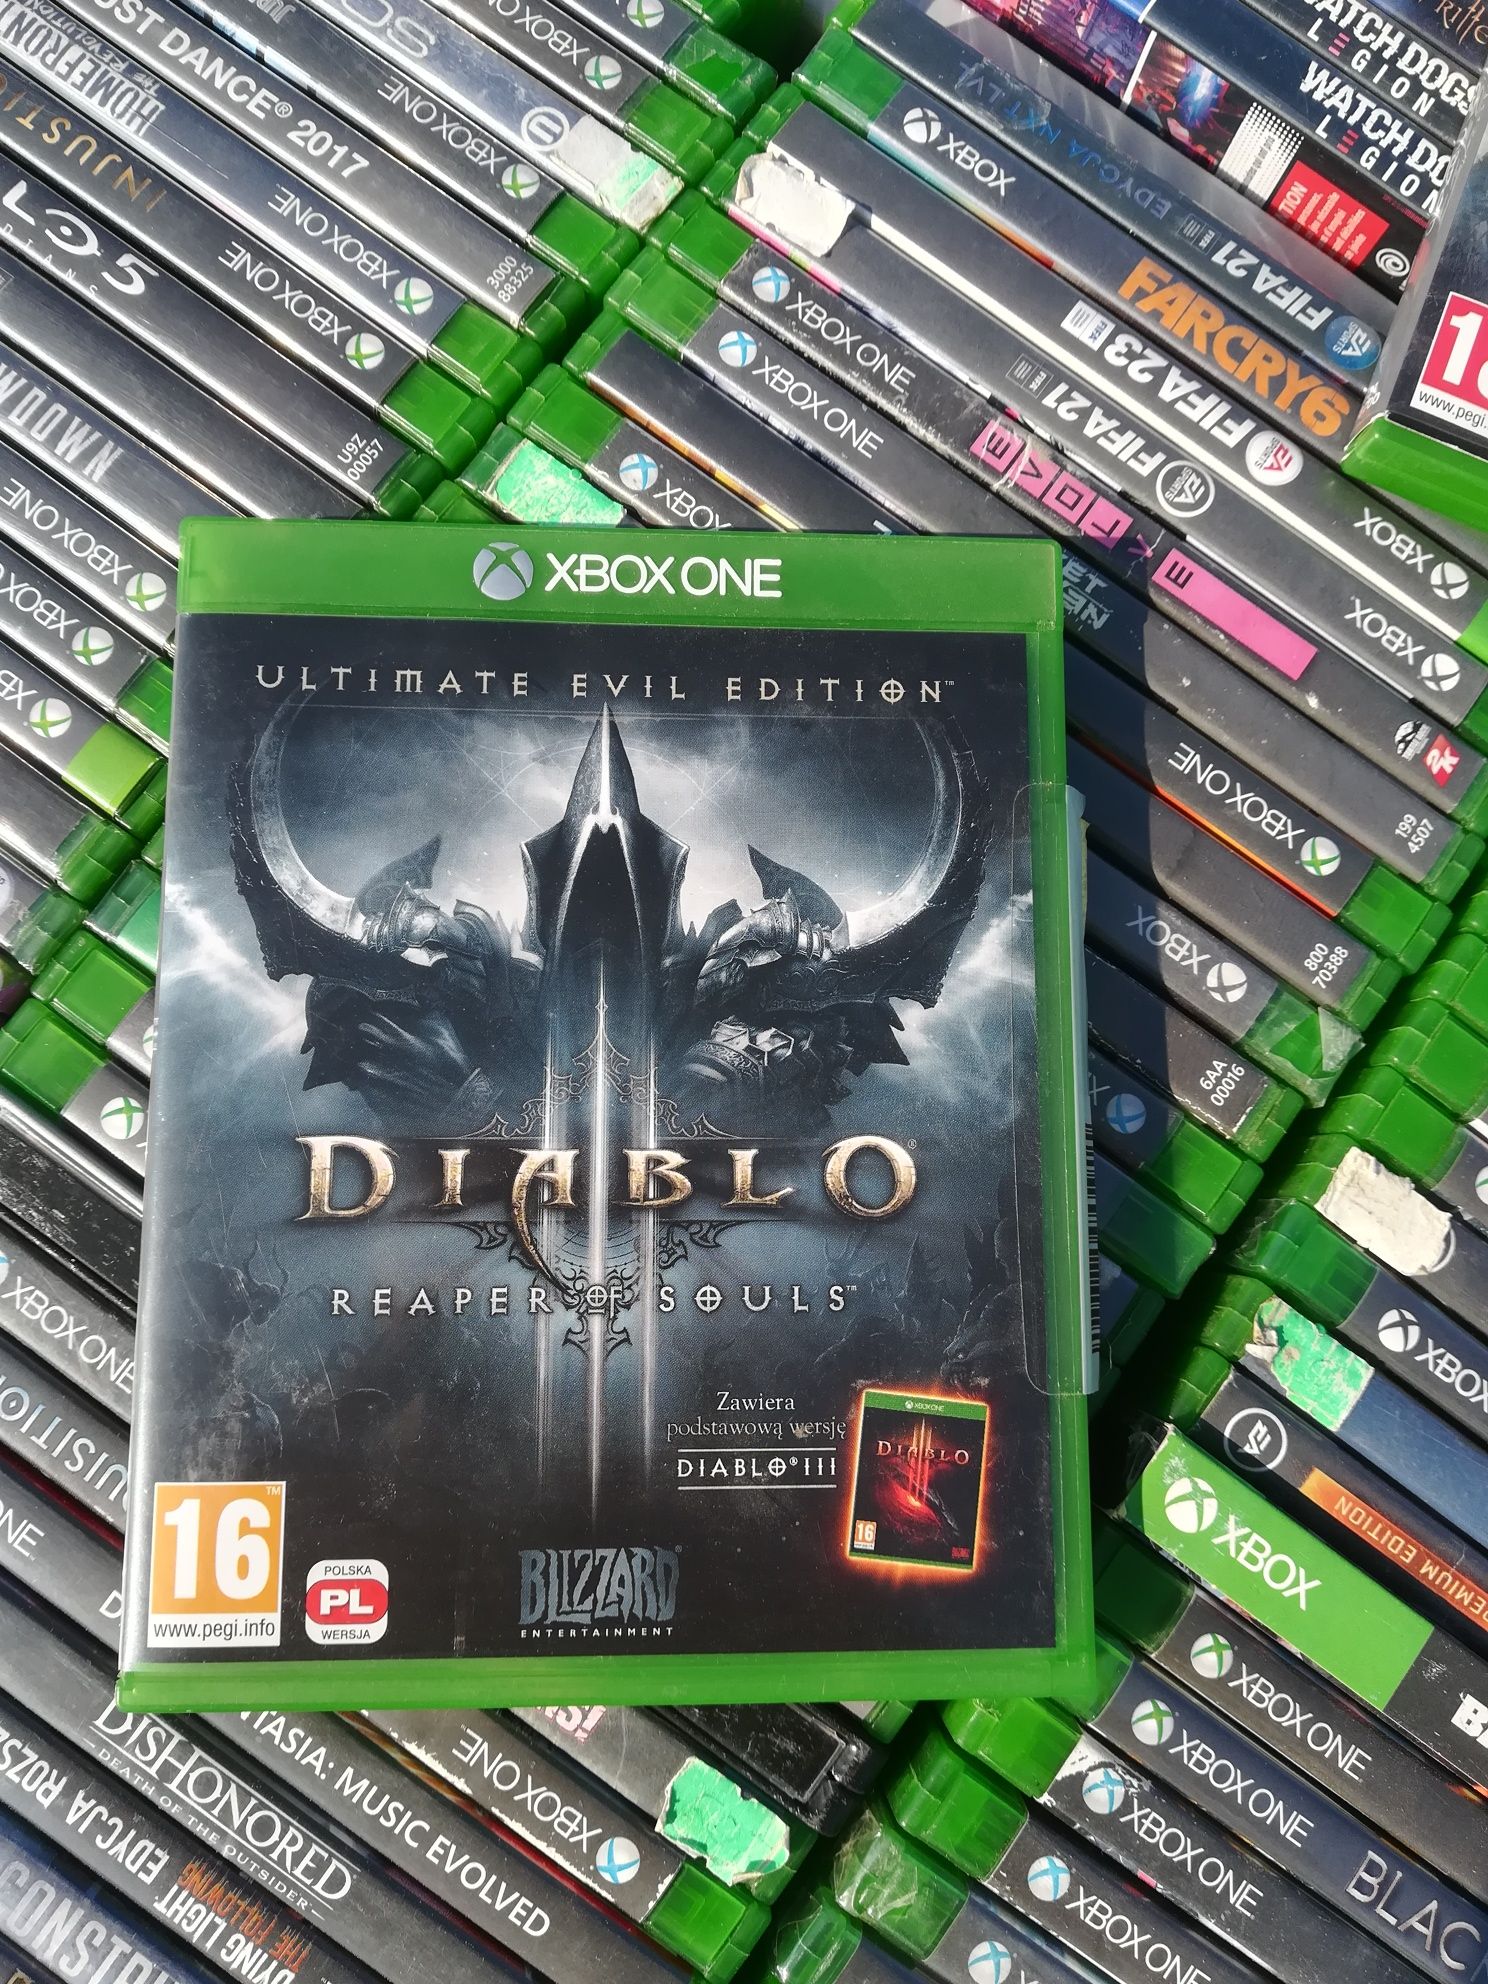 Diablo 3 III reaper of souls PL xbox one